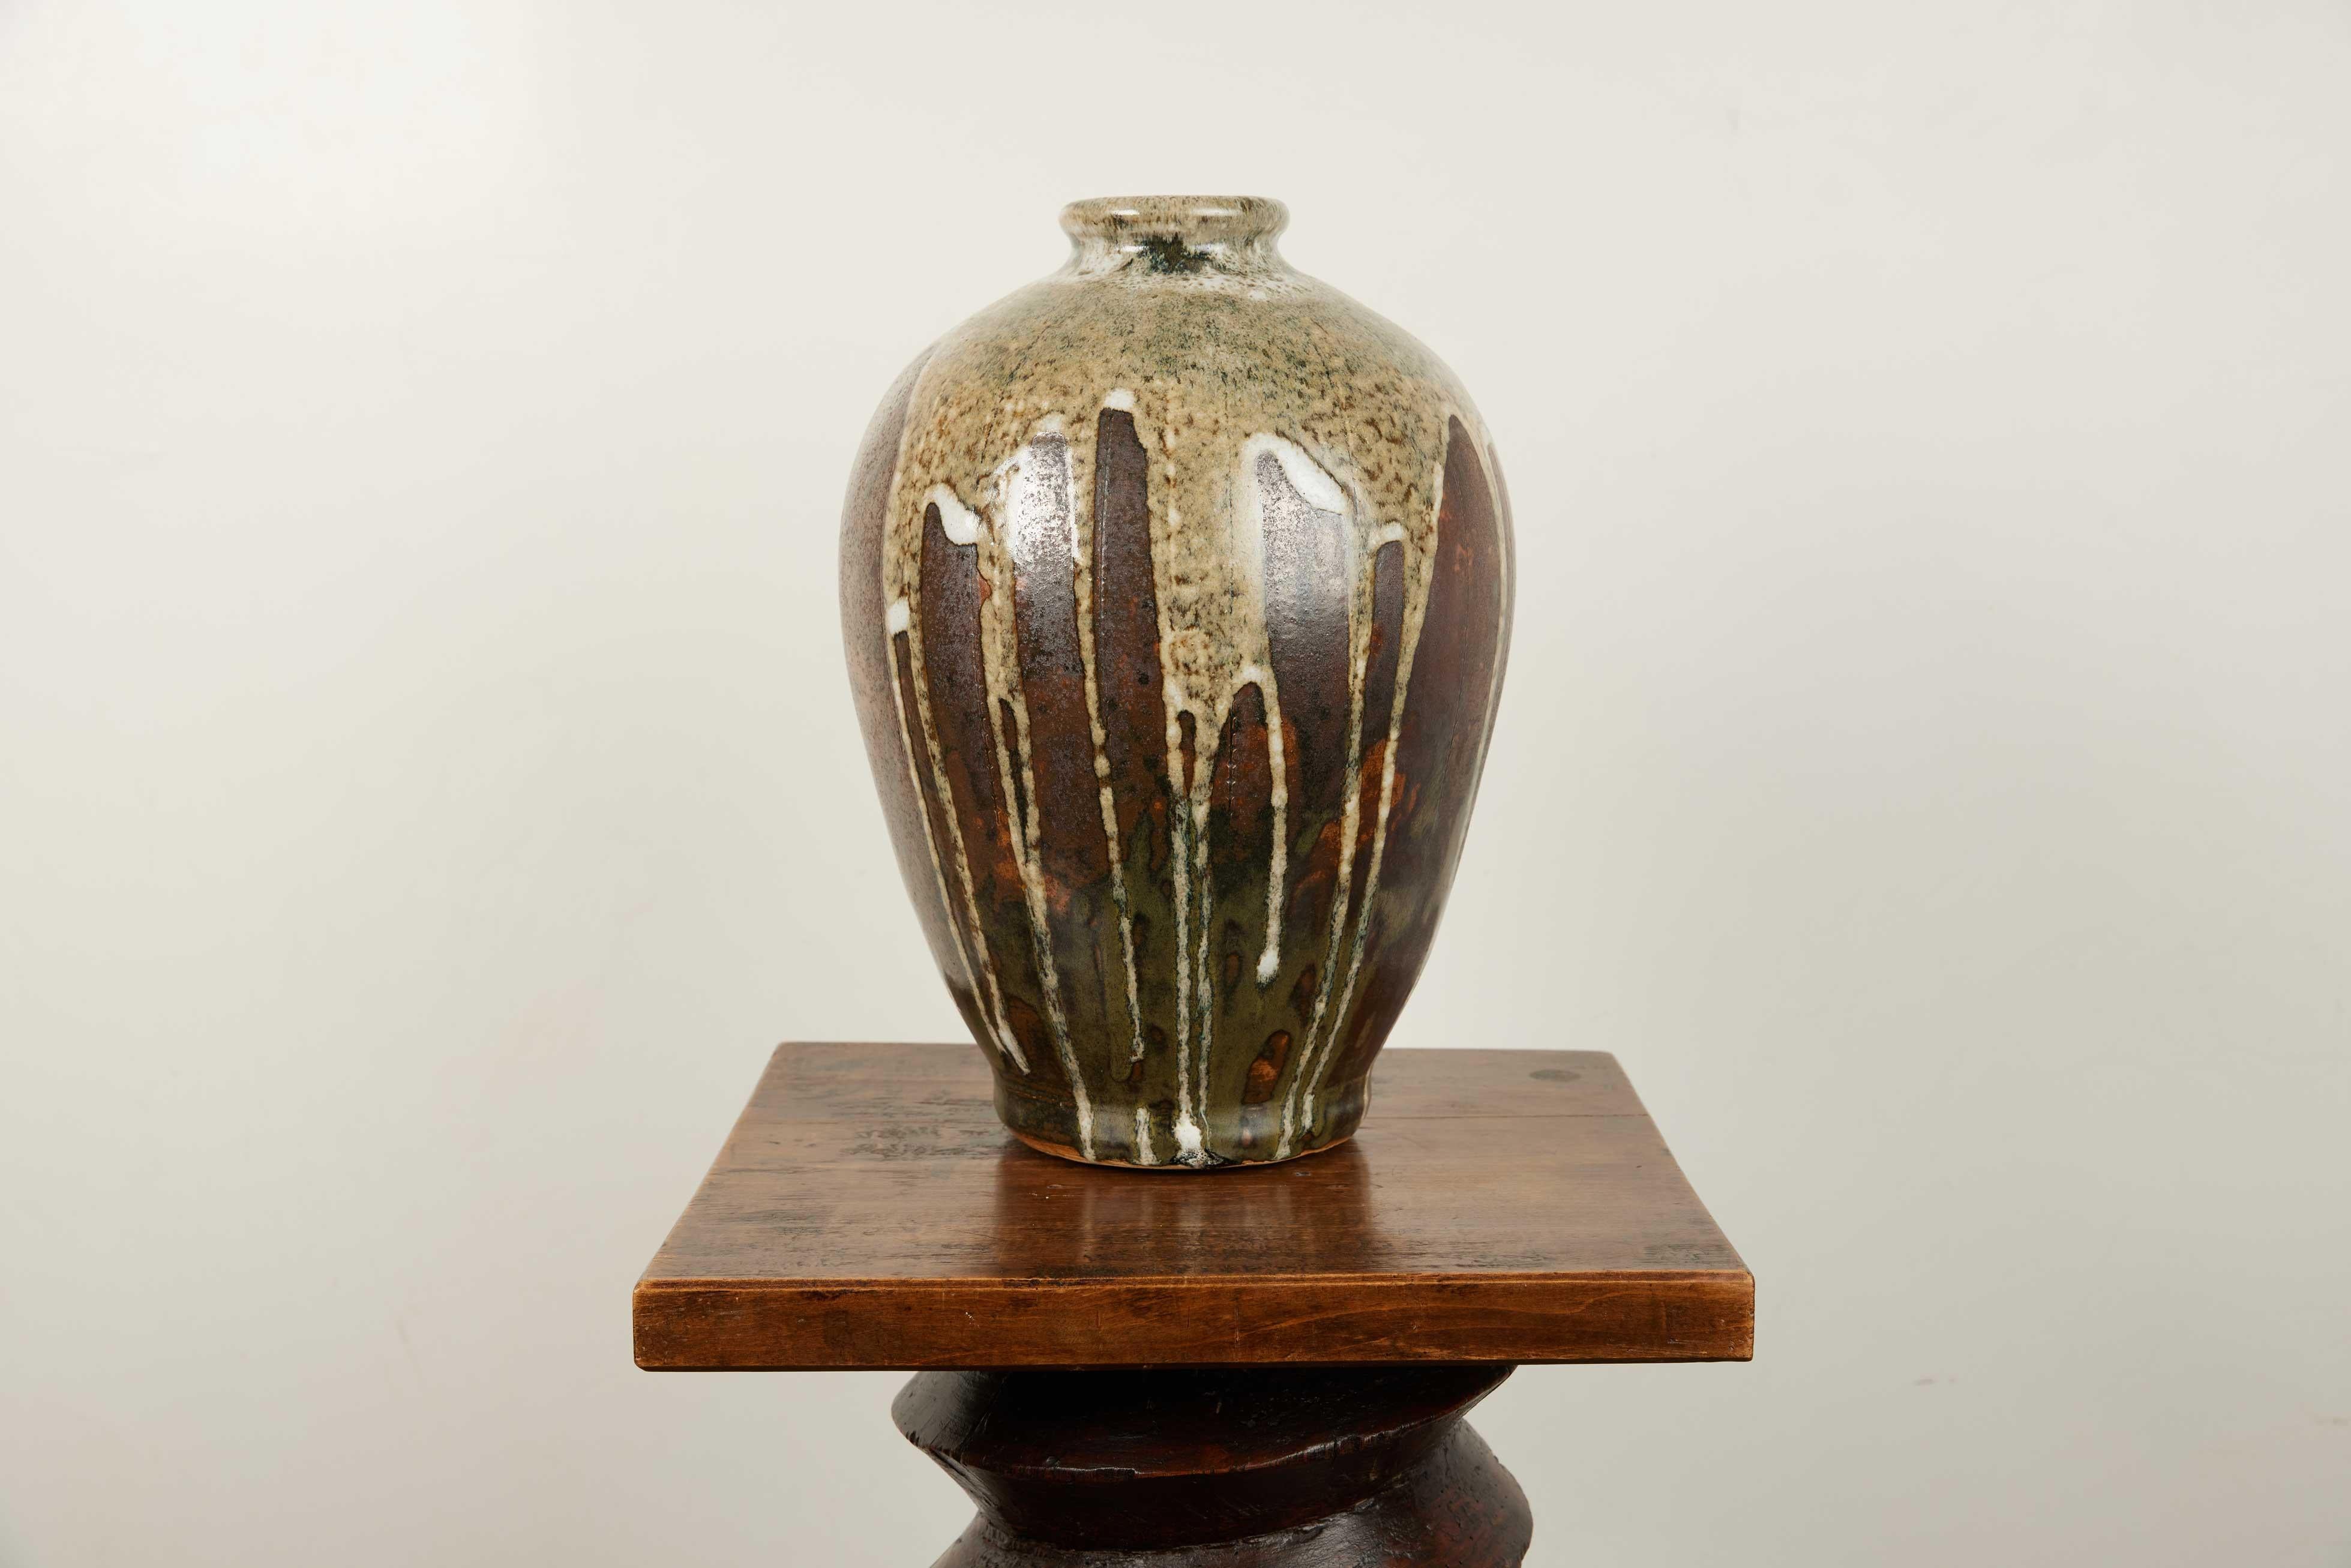 Zeitgenössische Mid Century Holz gebrannt braun Tropf Vase glasiert

Entdecken Sie die Faszination zeitgenössischer Handwerkskunst, die sich in dieser exquisiten holzbefeuerten Vase mit der Ästhetik der Jahrhundertmitte verbindet. Mit einer Höhe von